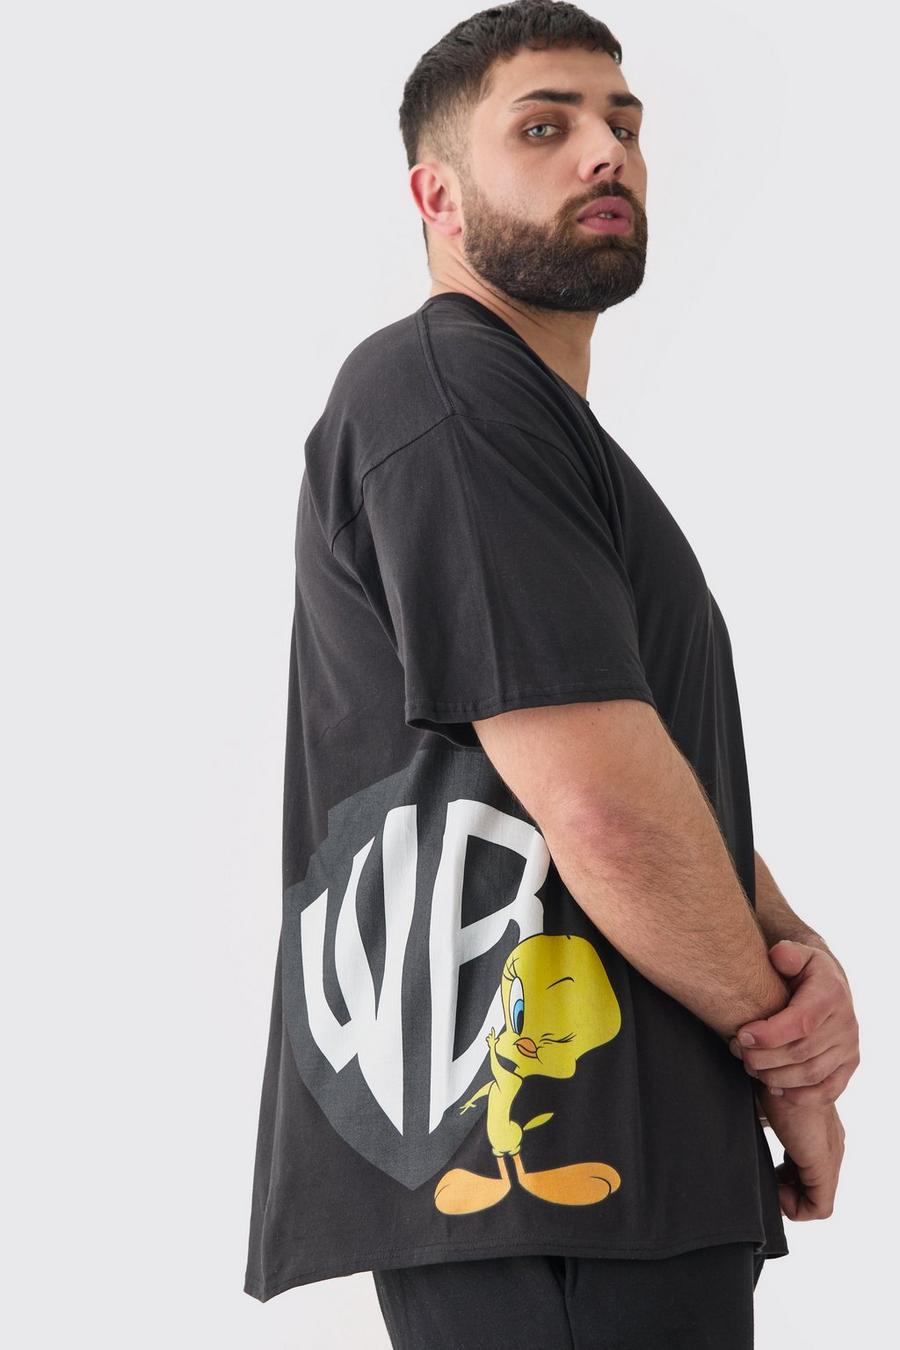 Camiseta Plus con estampado lateral de Piolín y Warner Bros, Black